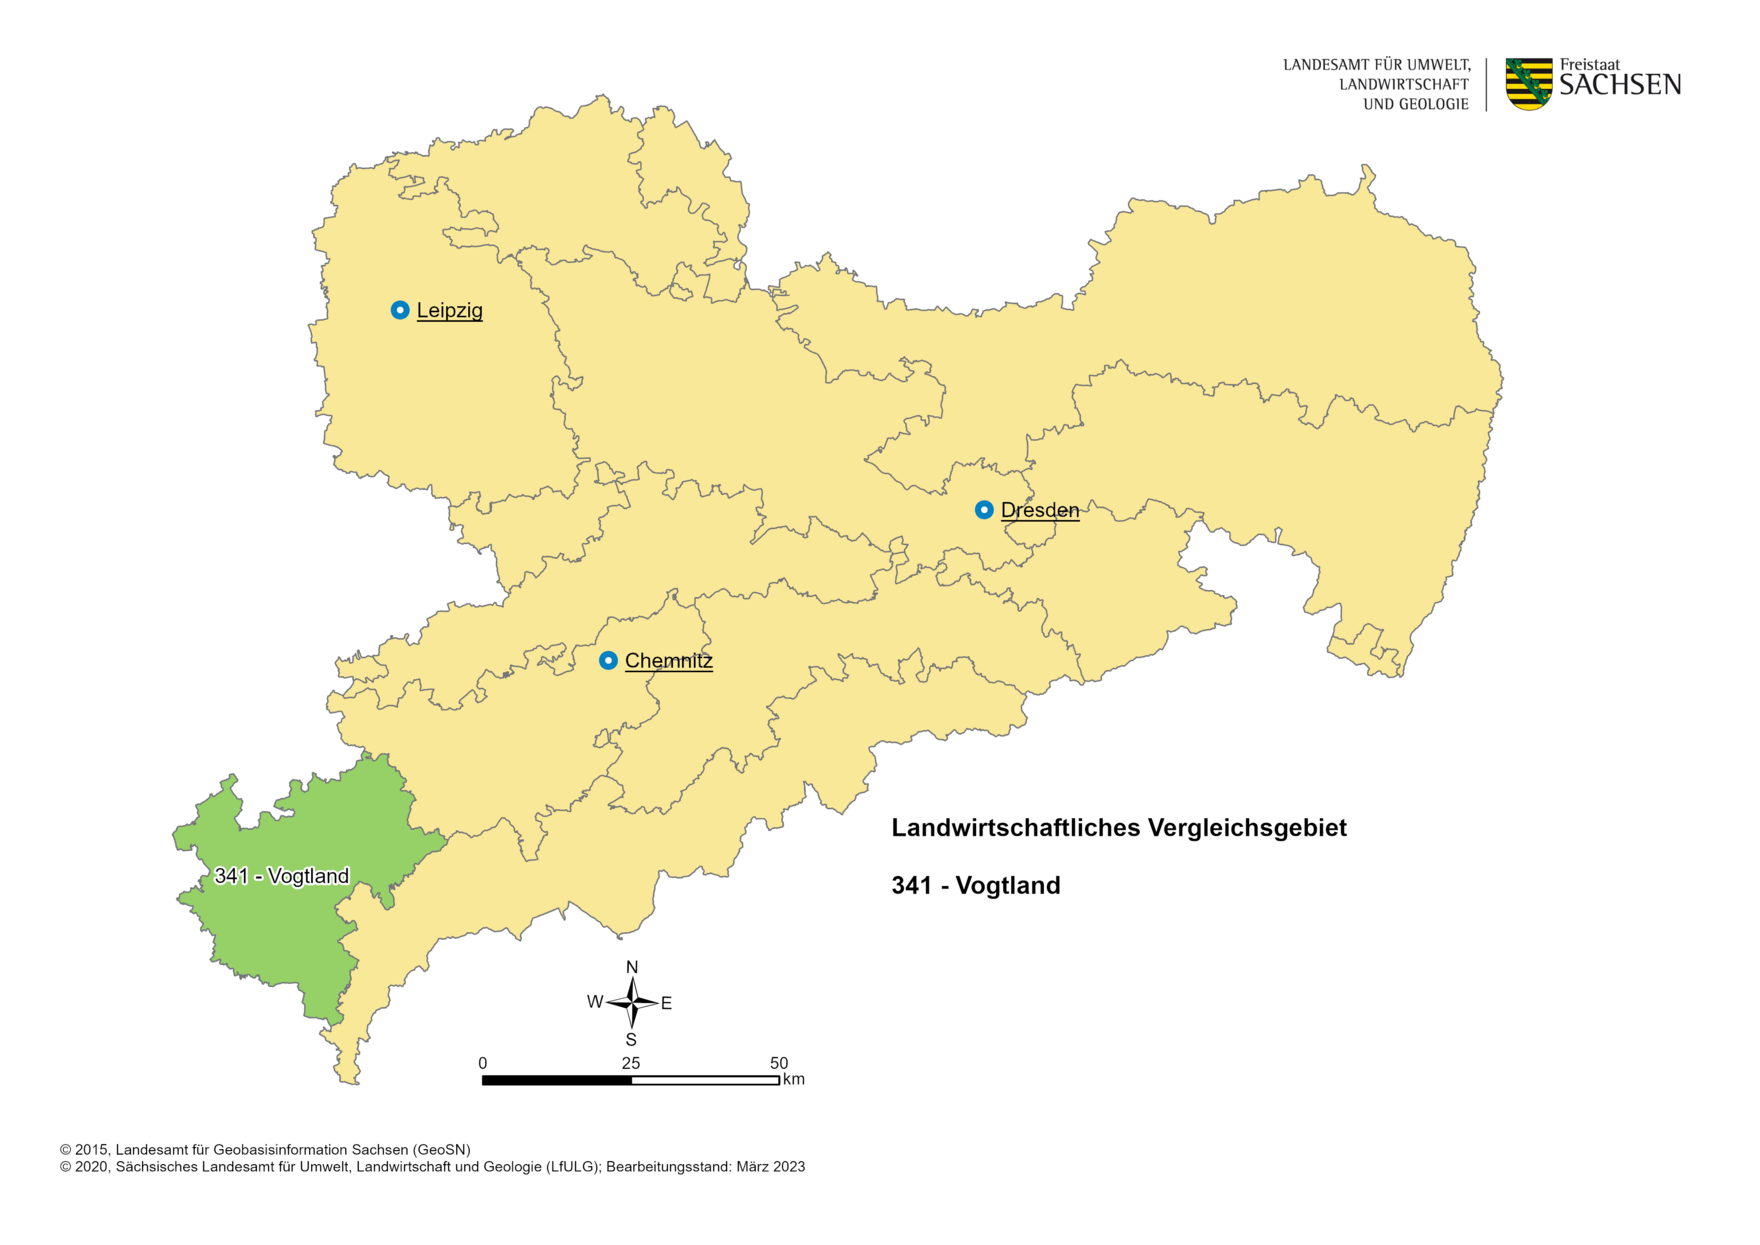 Vergleichsgebiet 341 - Vogtland